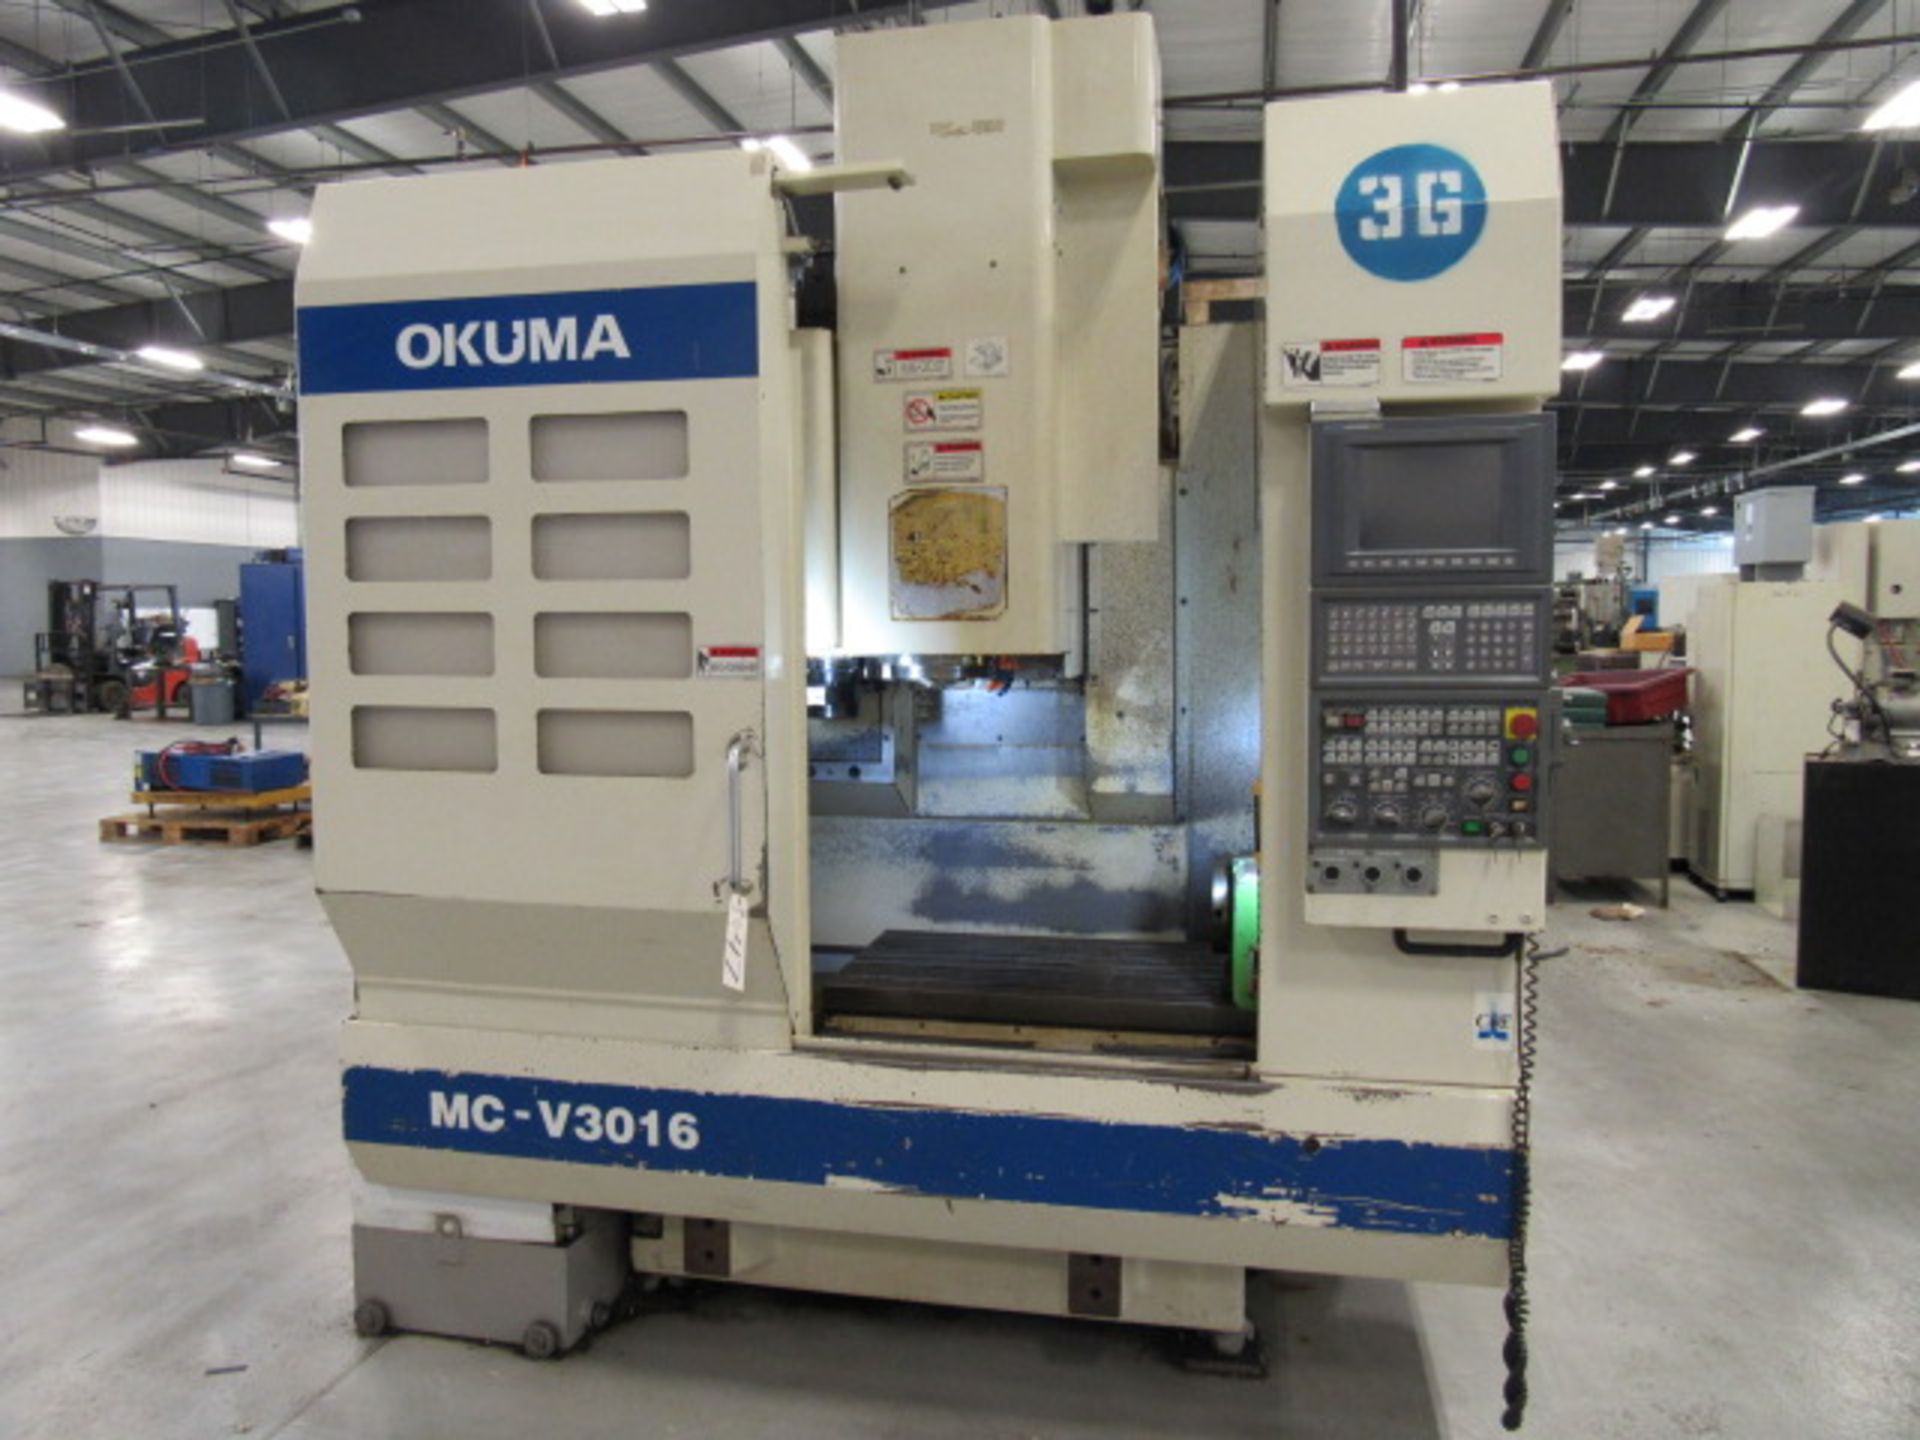 Okuma MC-V3016 CNC Vertical Machining Center